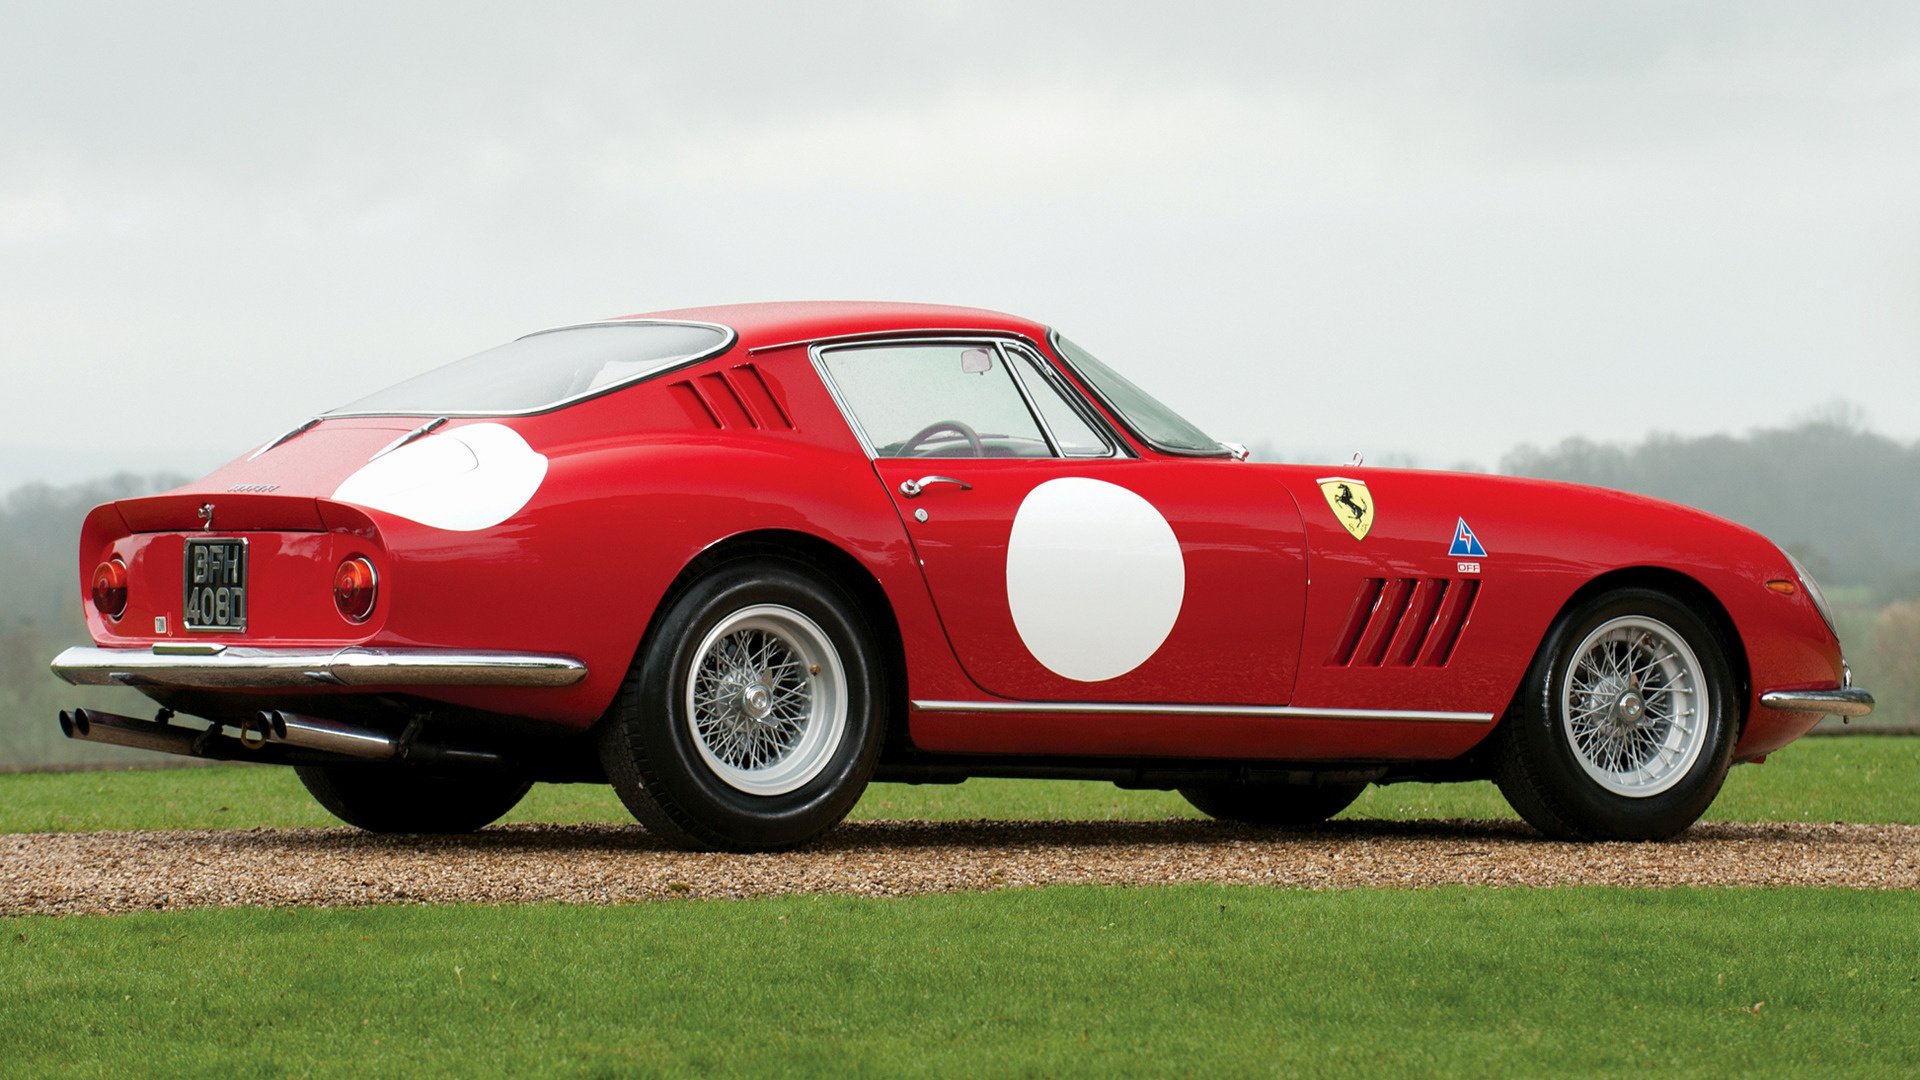 1966 Ferrari 275 GTB/C HD Wallpaper | Background Image | 1920x1080 | ID:1020015 - Wallpaper Abyss